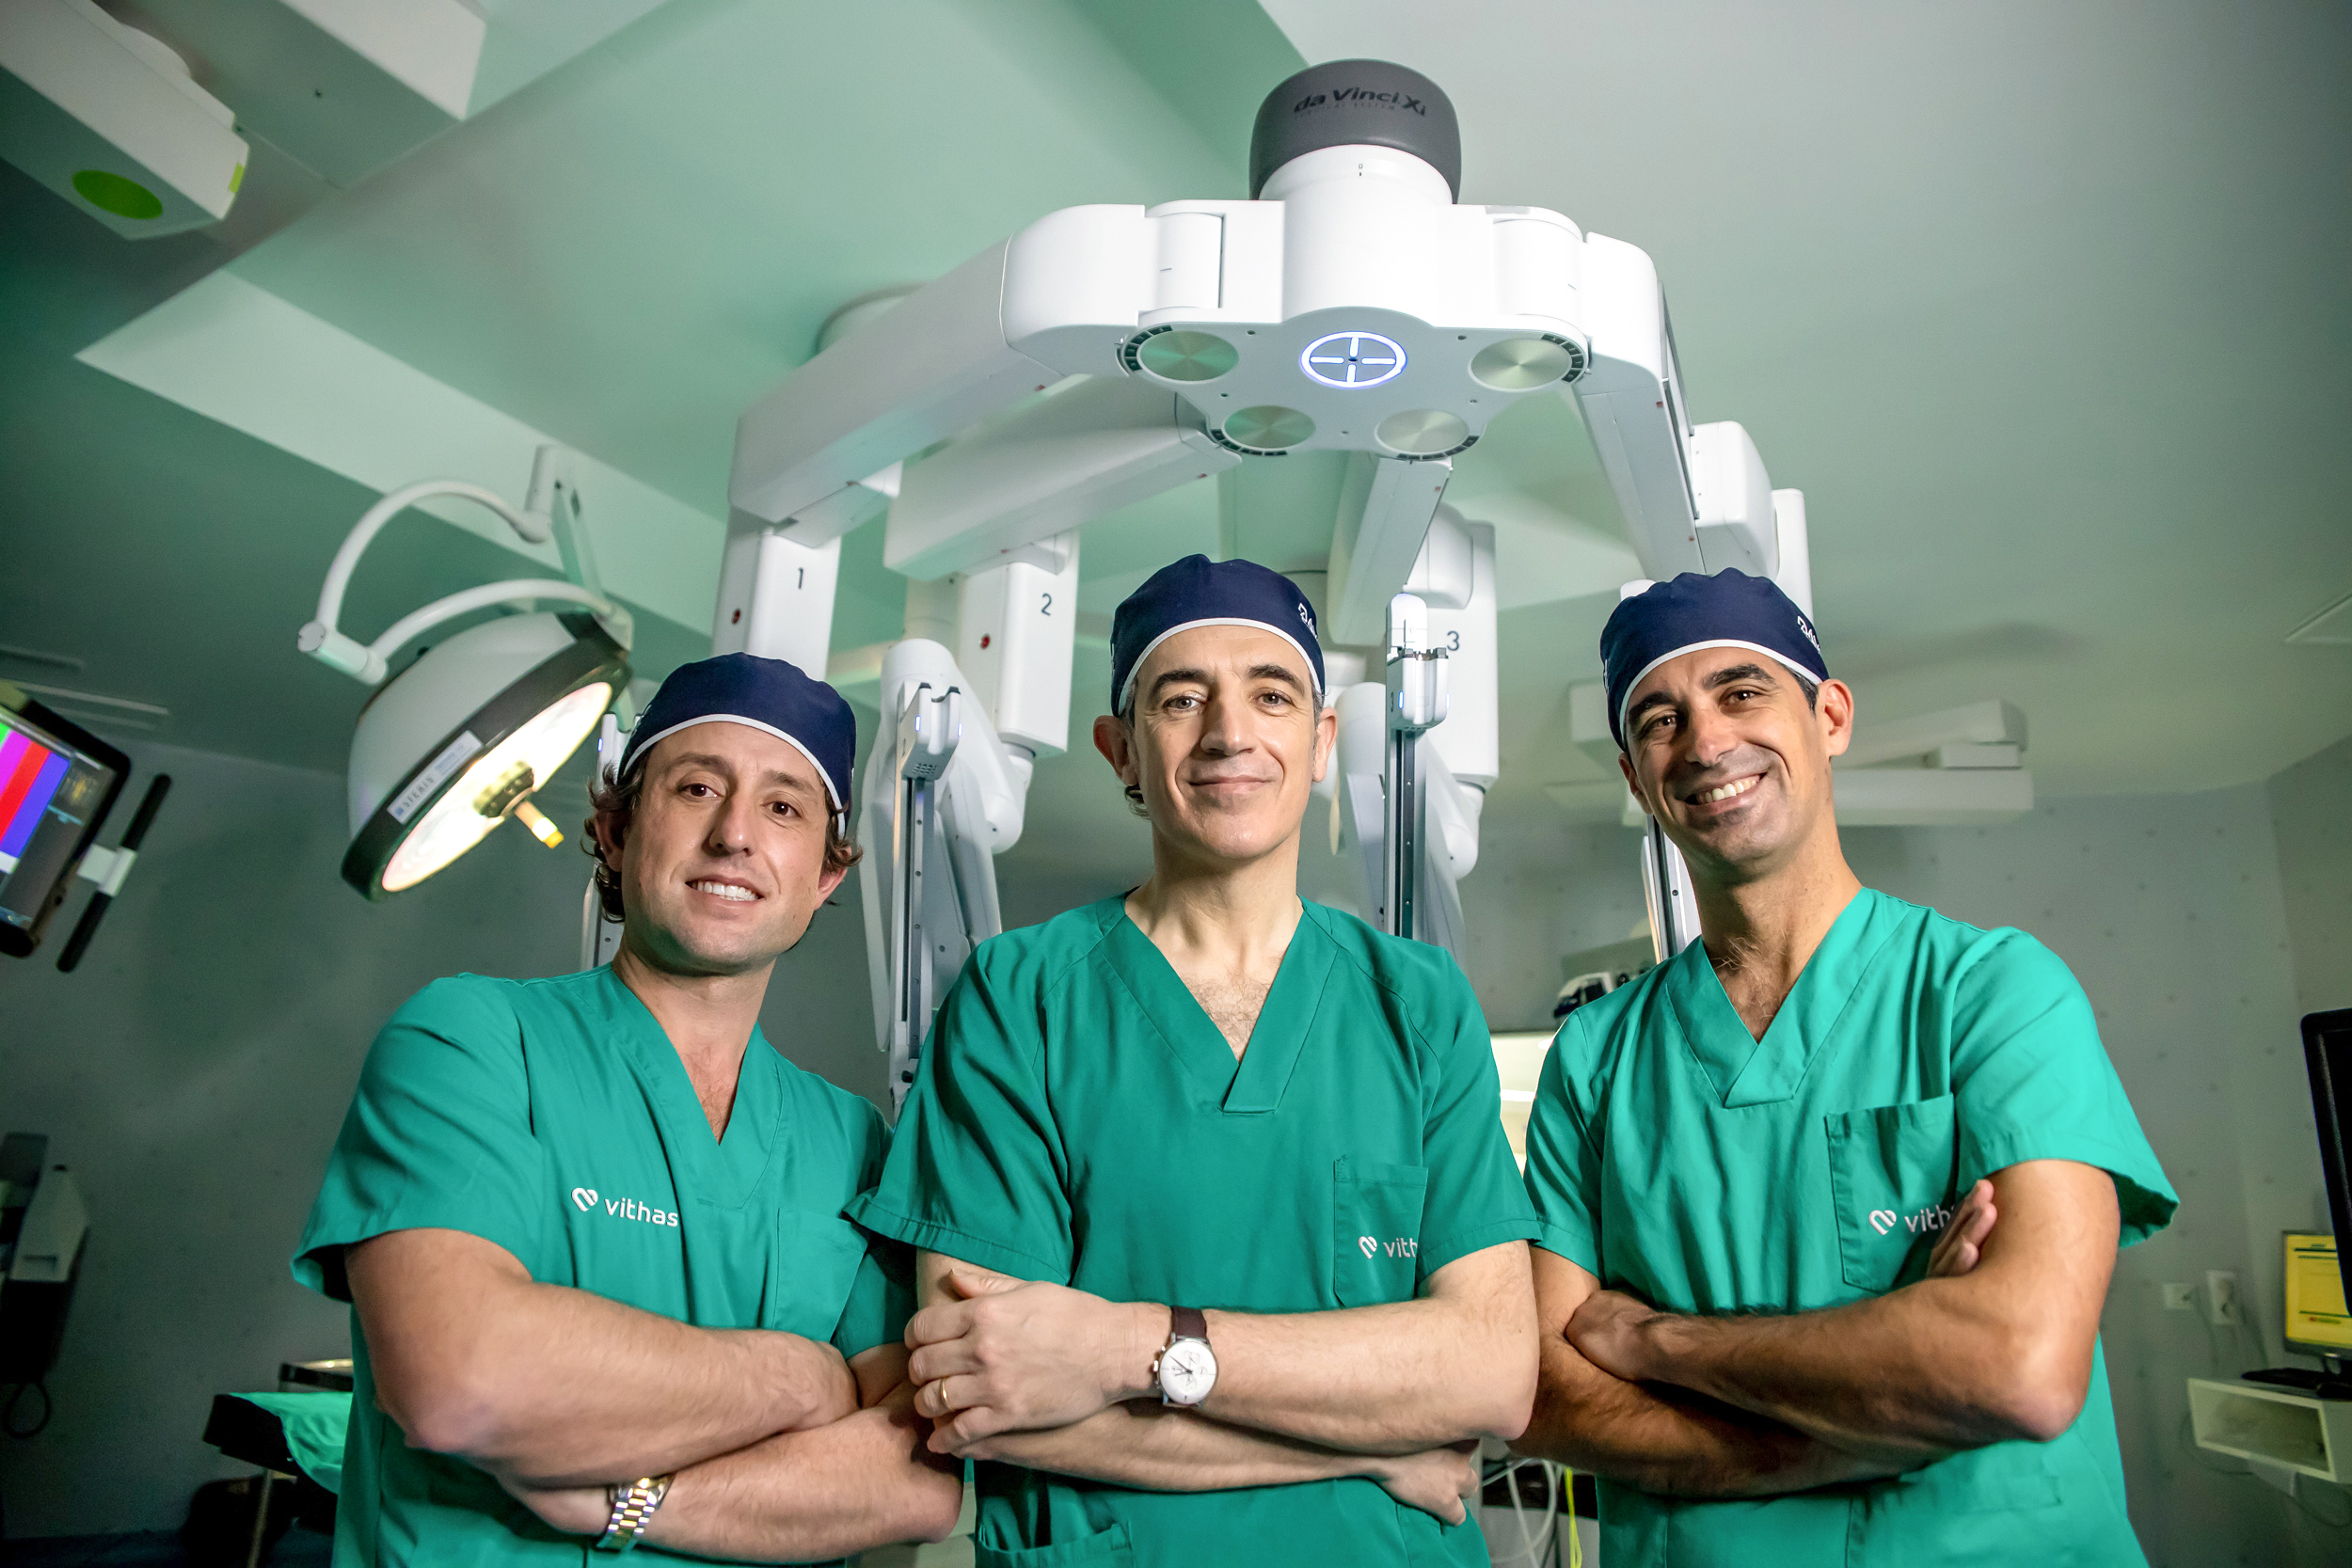 El Congreso Nacional de Urología premia la cirugía robótica del grupo Suturo de Vithas Sevilla